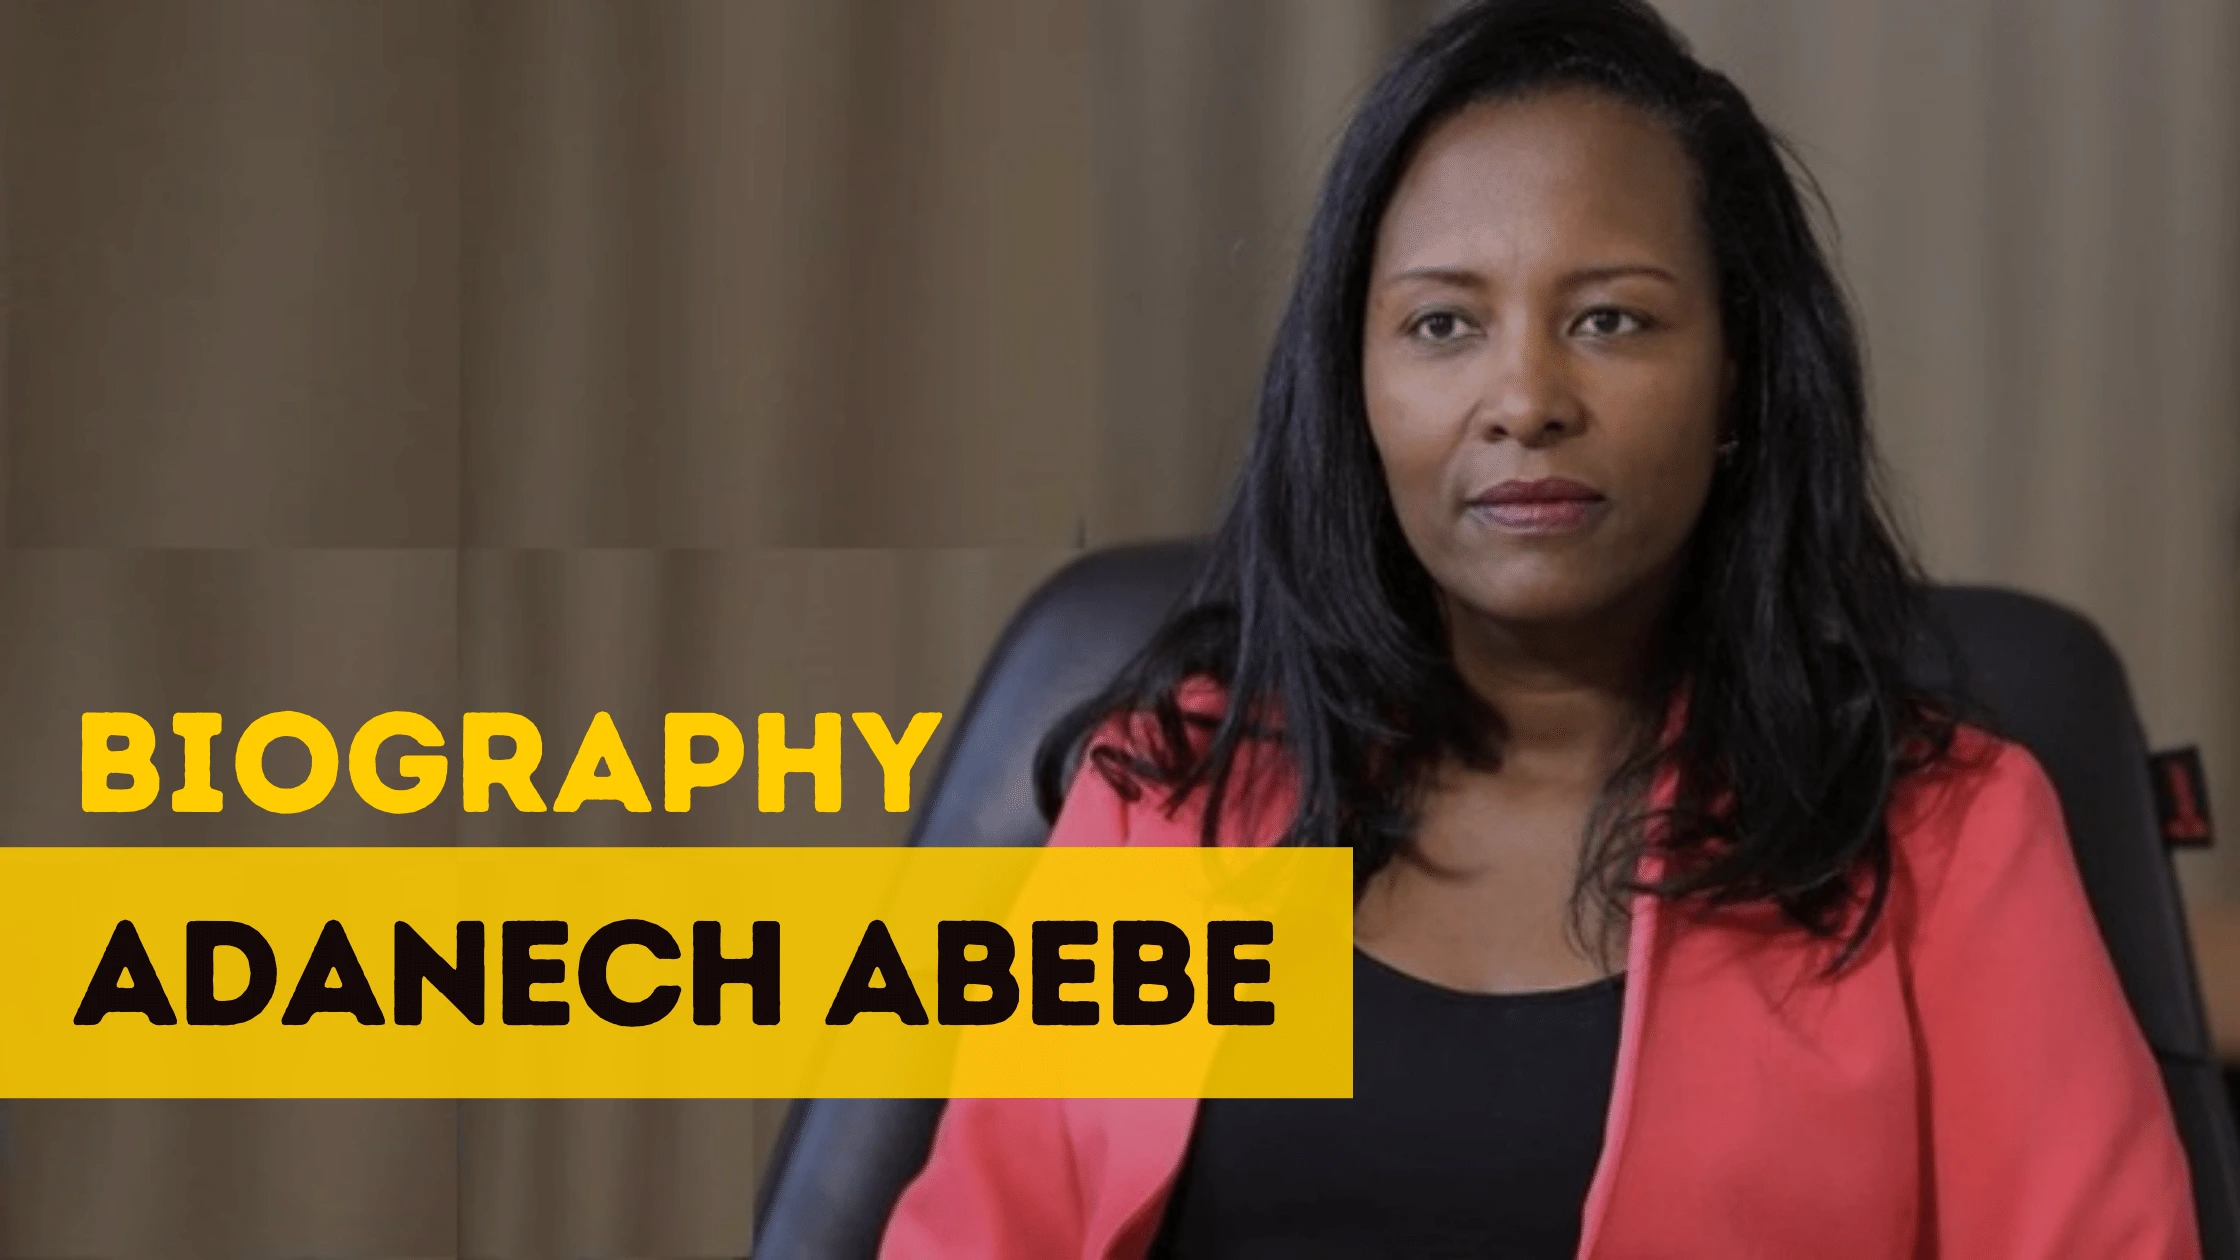 Adanech Abebe biography